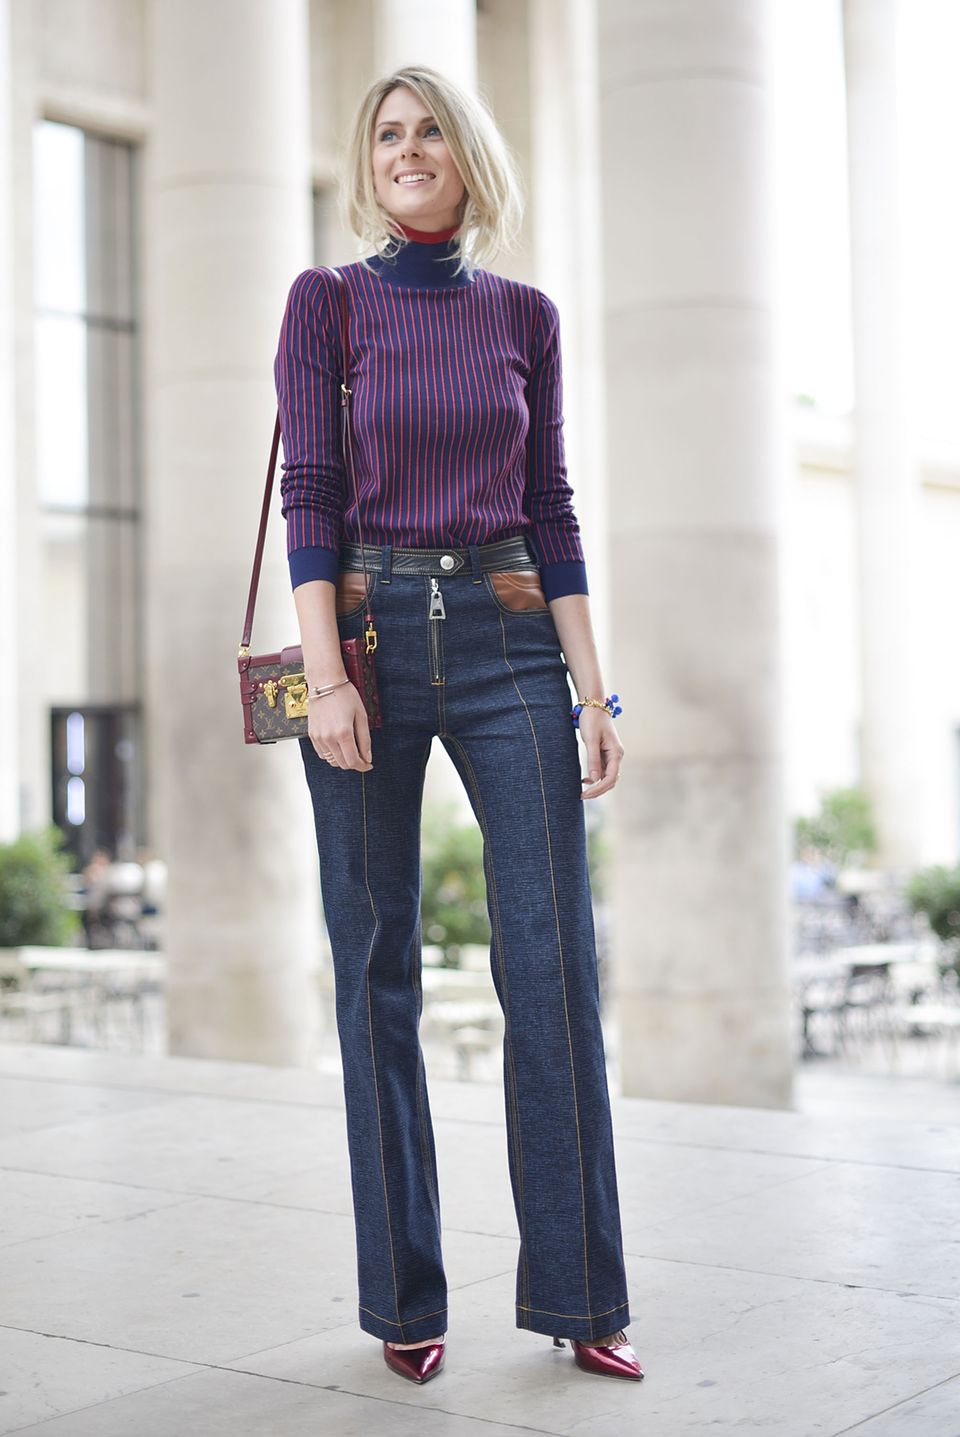 Ein farblich besonders schönes Outfit mit Marlene-Hose und Rollkragen-Pullover, dessen Farben in der Tasche und den Pumps aufgegriffen werden.